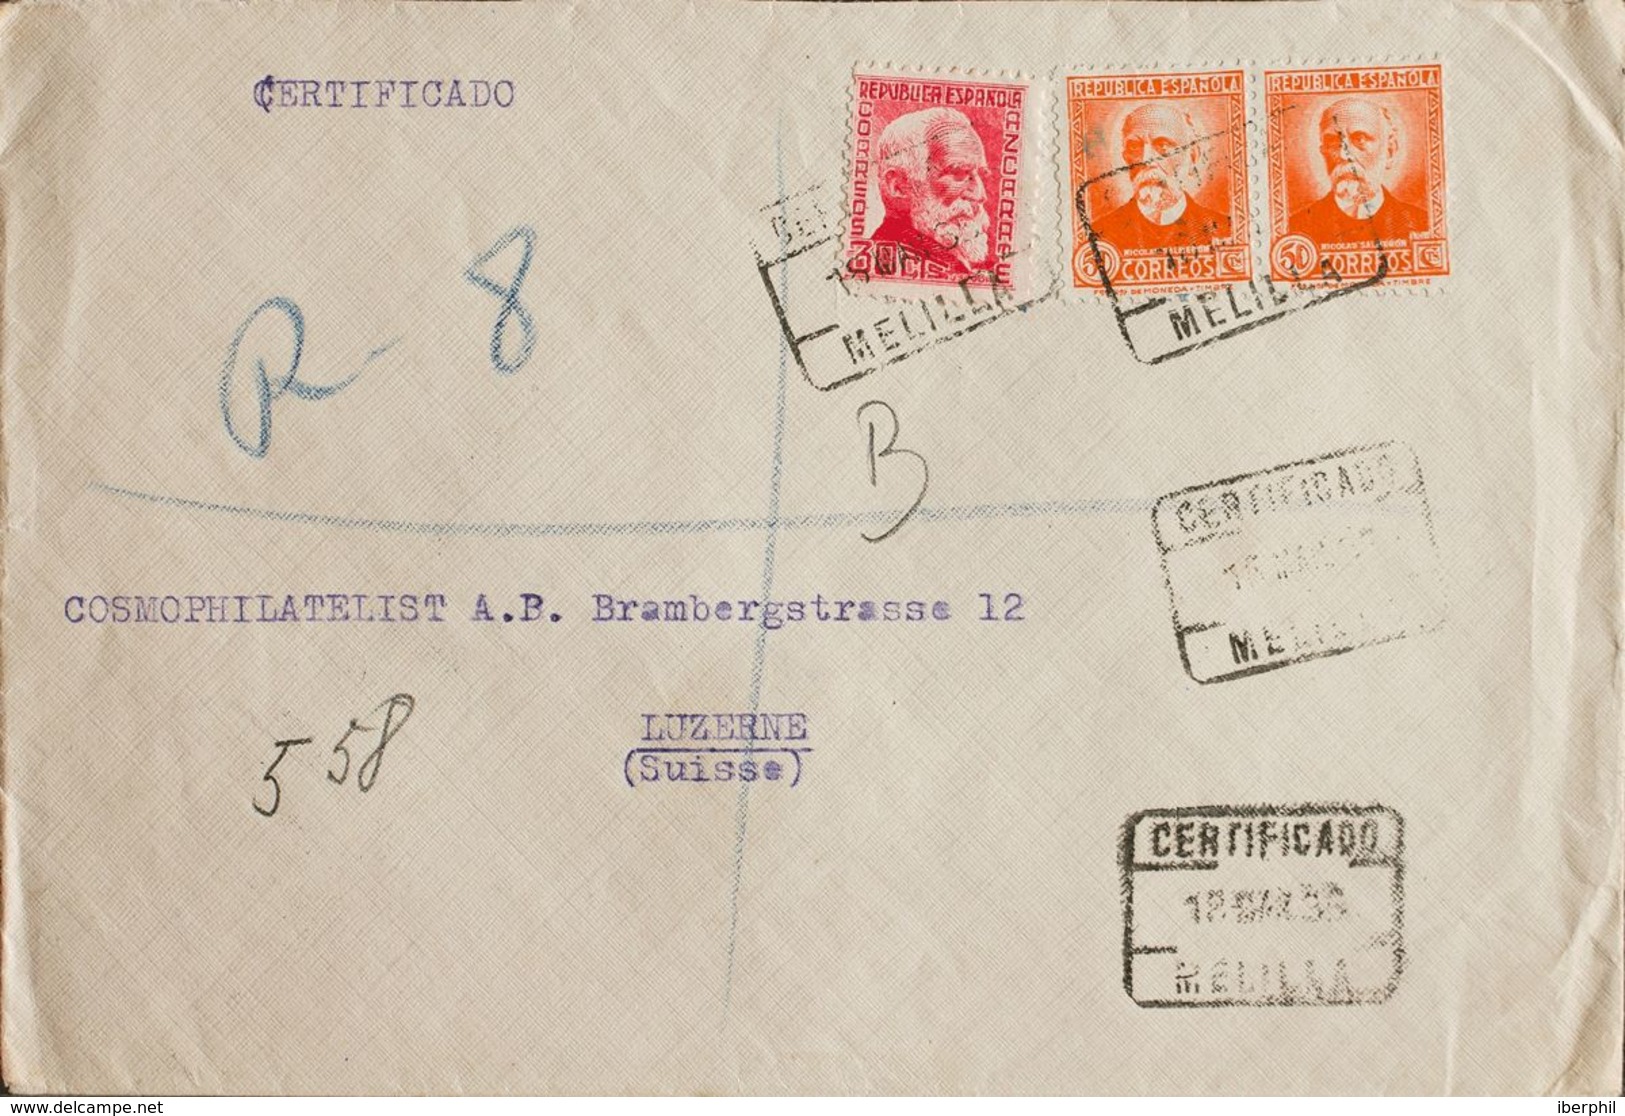 España. República Española Correo Certificado. Sobre 686, 671(2). 1935. 30 Cts Rosa Y 50 Cts Naranja, Dos Sellos. Certif - Storia Postale